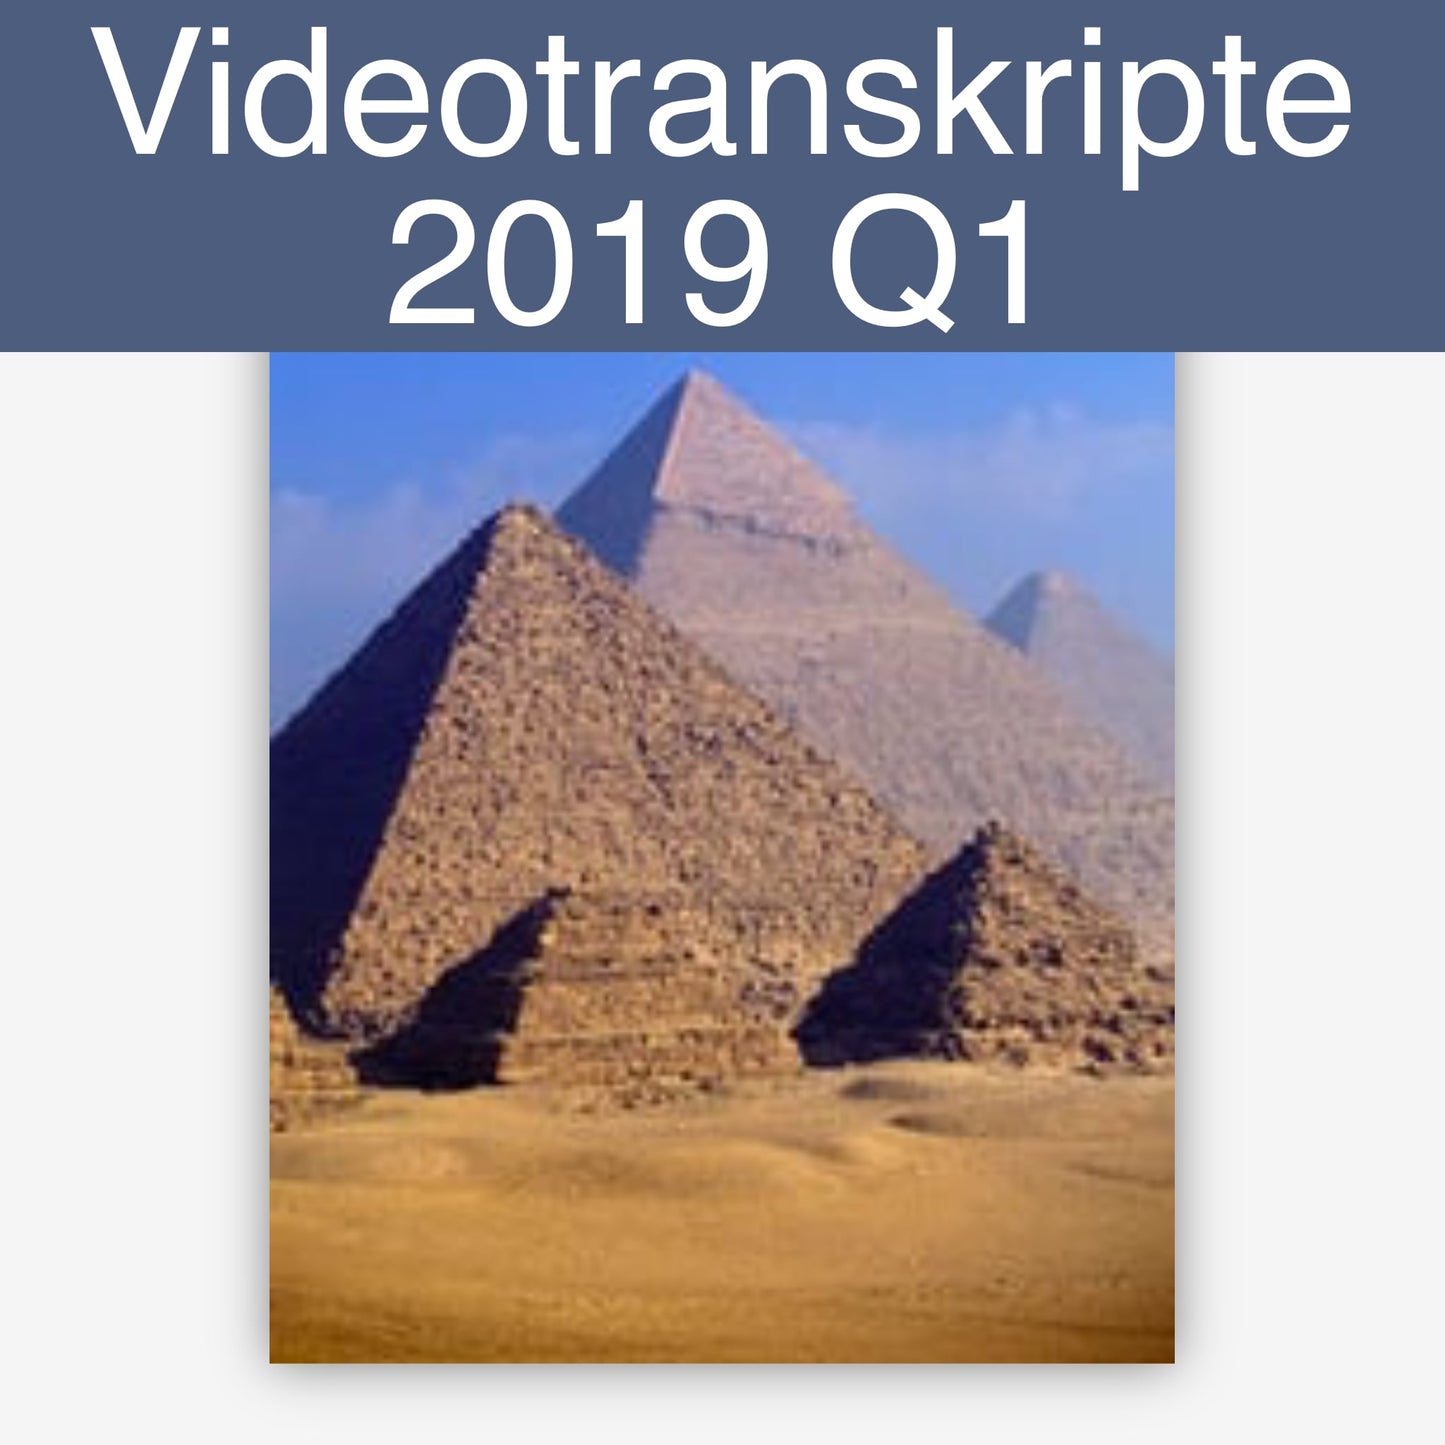 Videotranskripte 2019 Q1